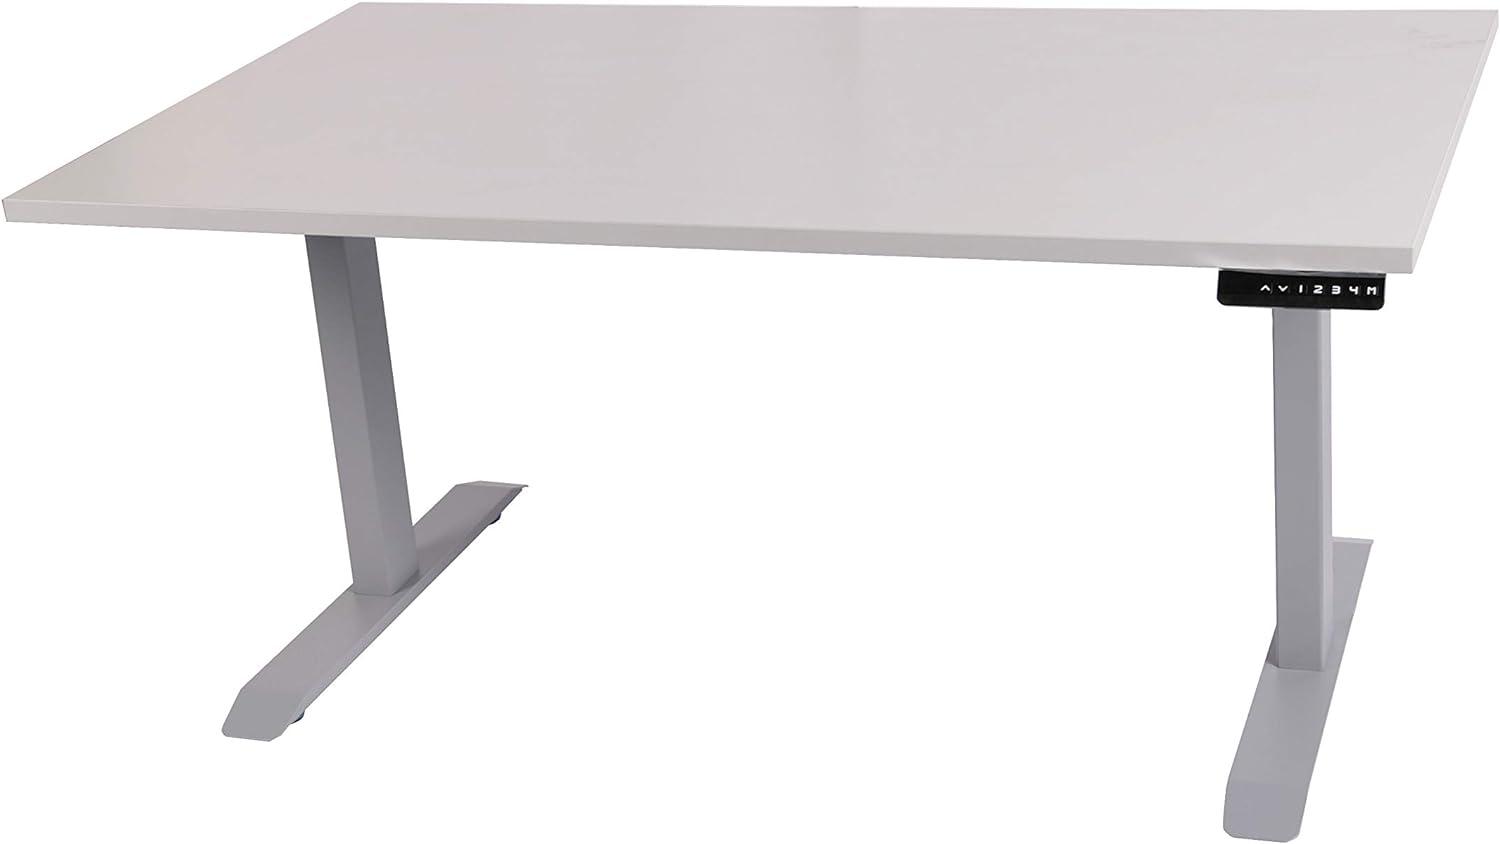 Schreibtisch stufenlos elektrisch höhenverstellbar BxTxH: 120x80x(64,5-129,5) cm lichtgrau, mit Memory-Funktion inkl. Tischplatte Stärke 2,5 cm (Stischgestell, Steh-Sitz Tisch) Szagato Bild 1